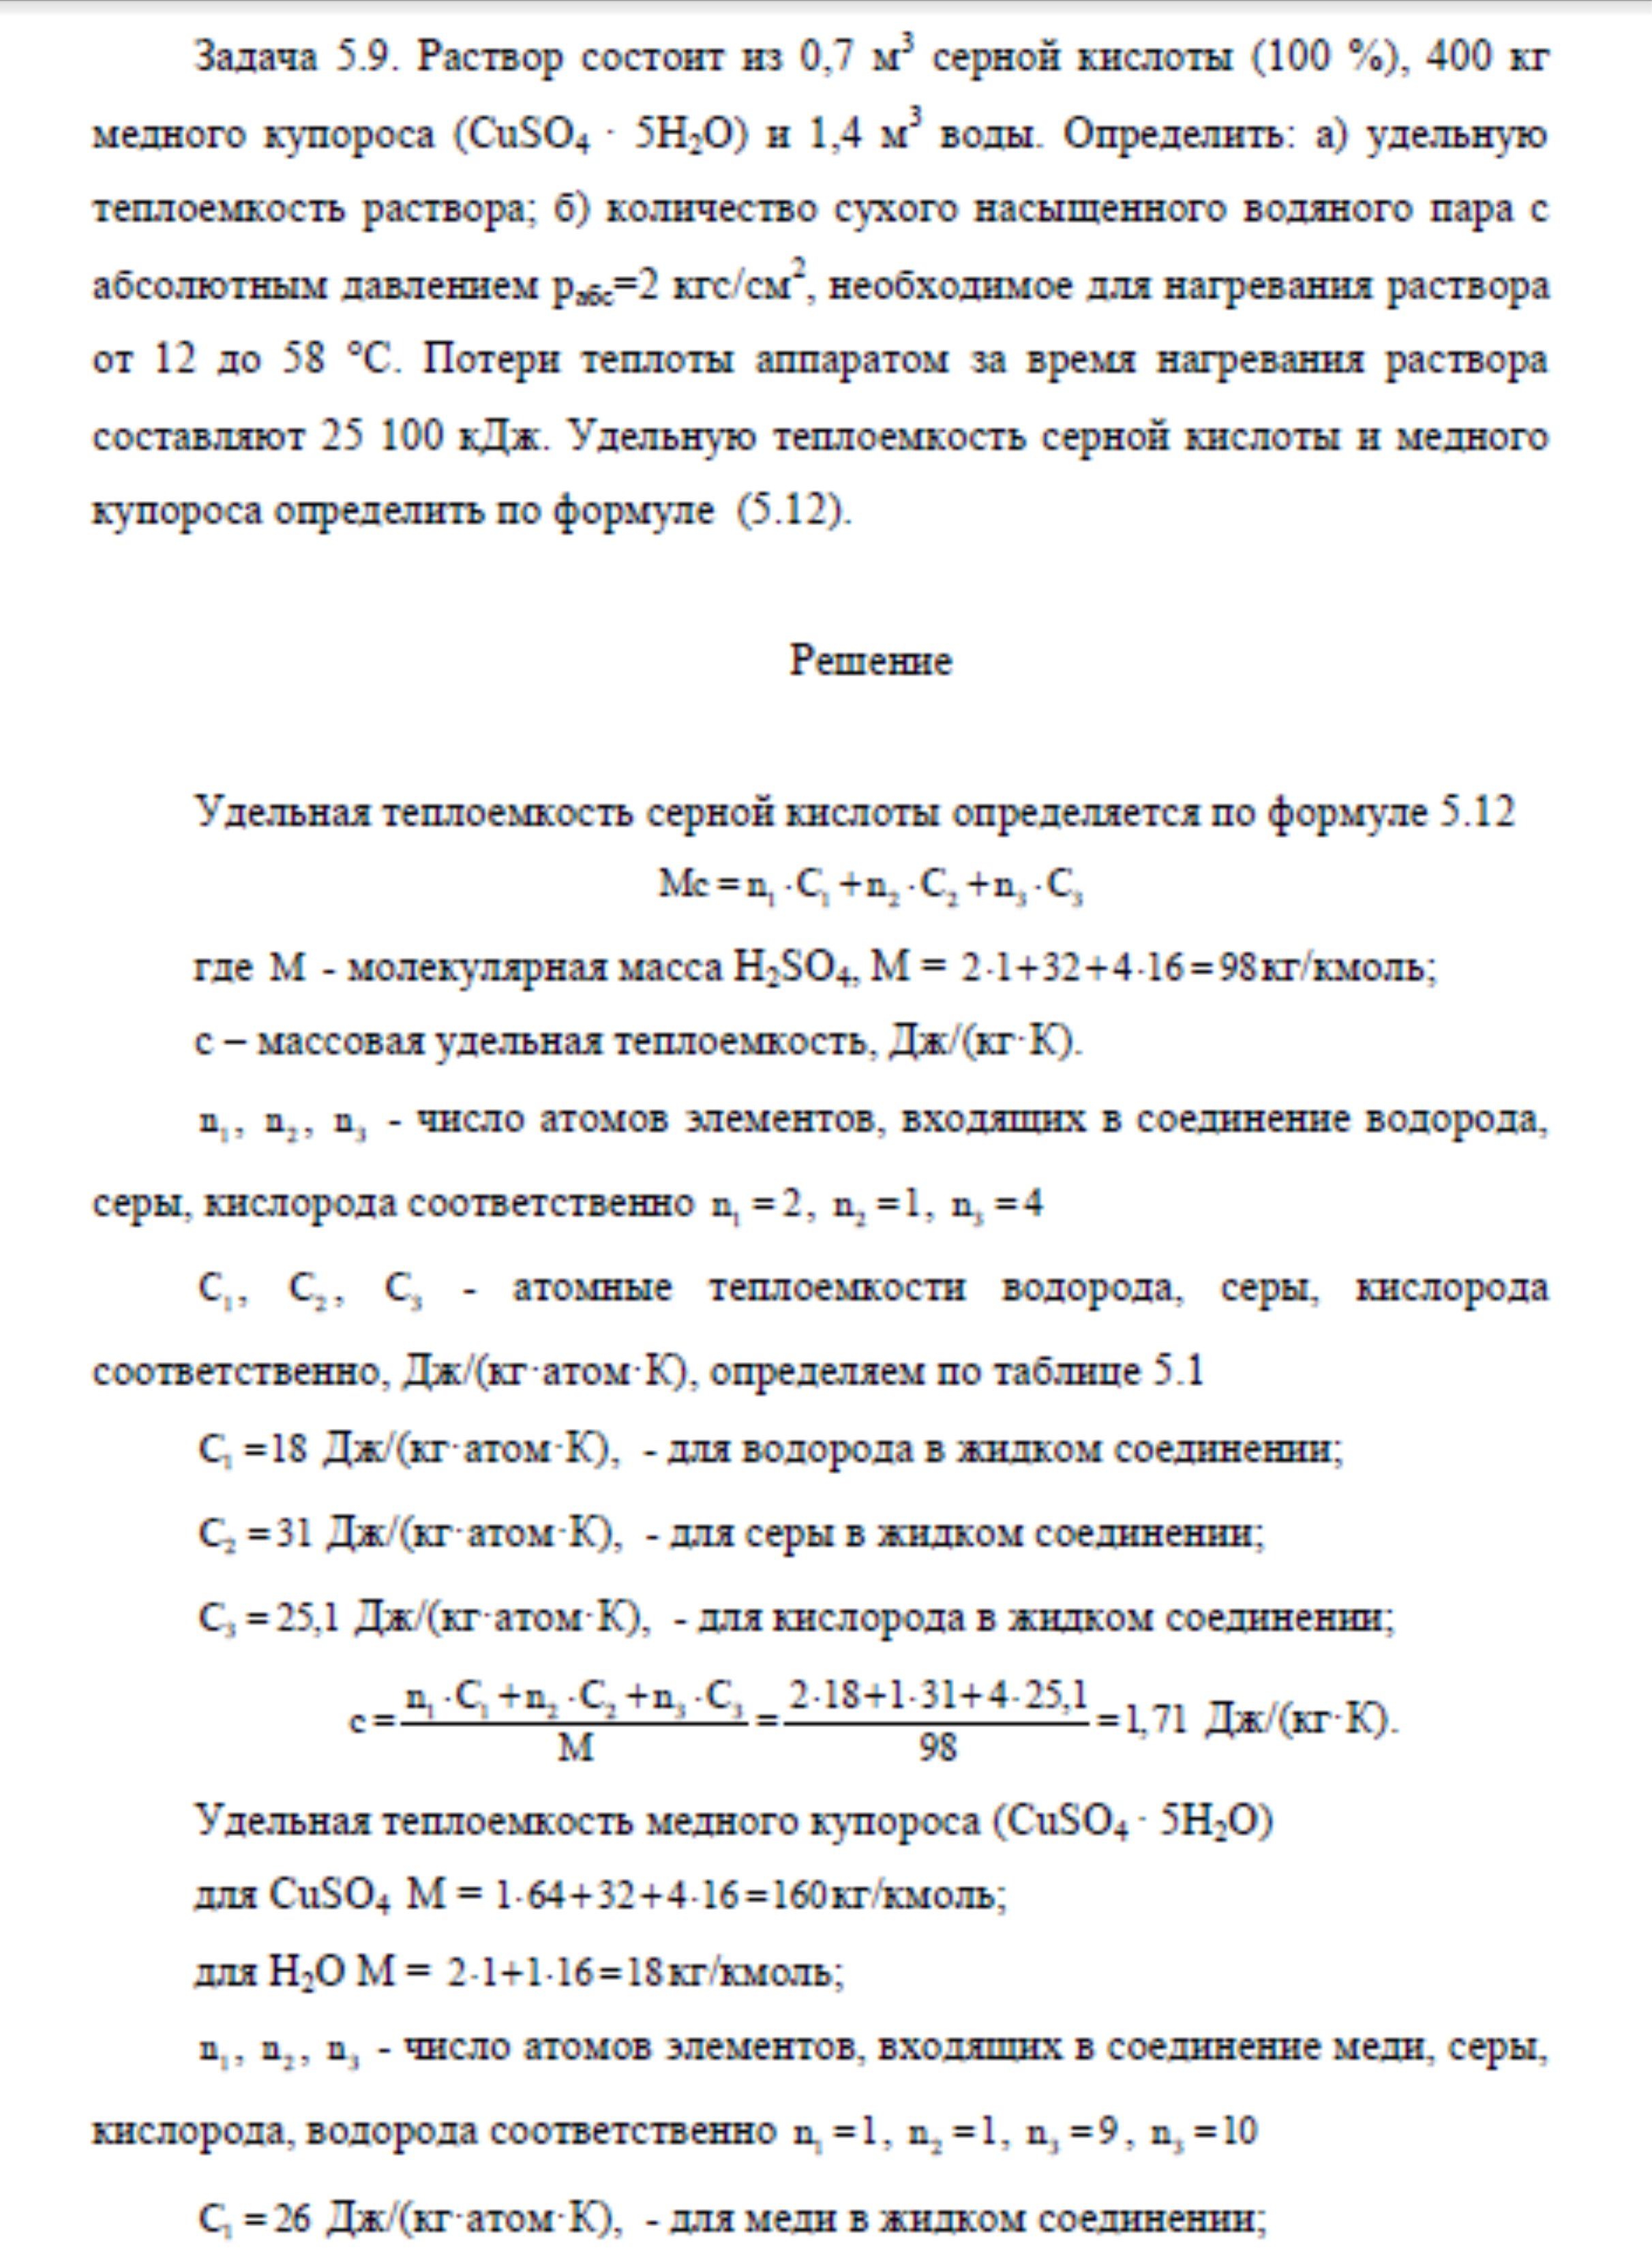 Решение задачи 5.9 по ПАХТ из задачника Павлова Романкова Носкова